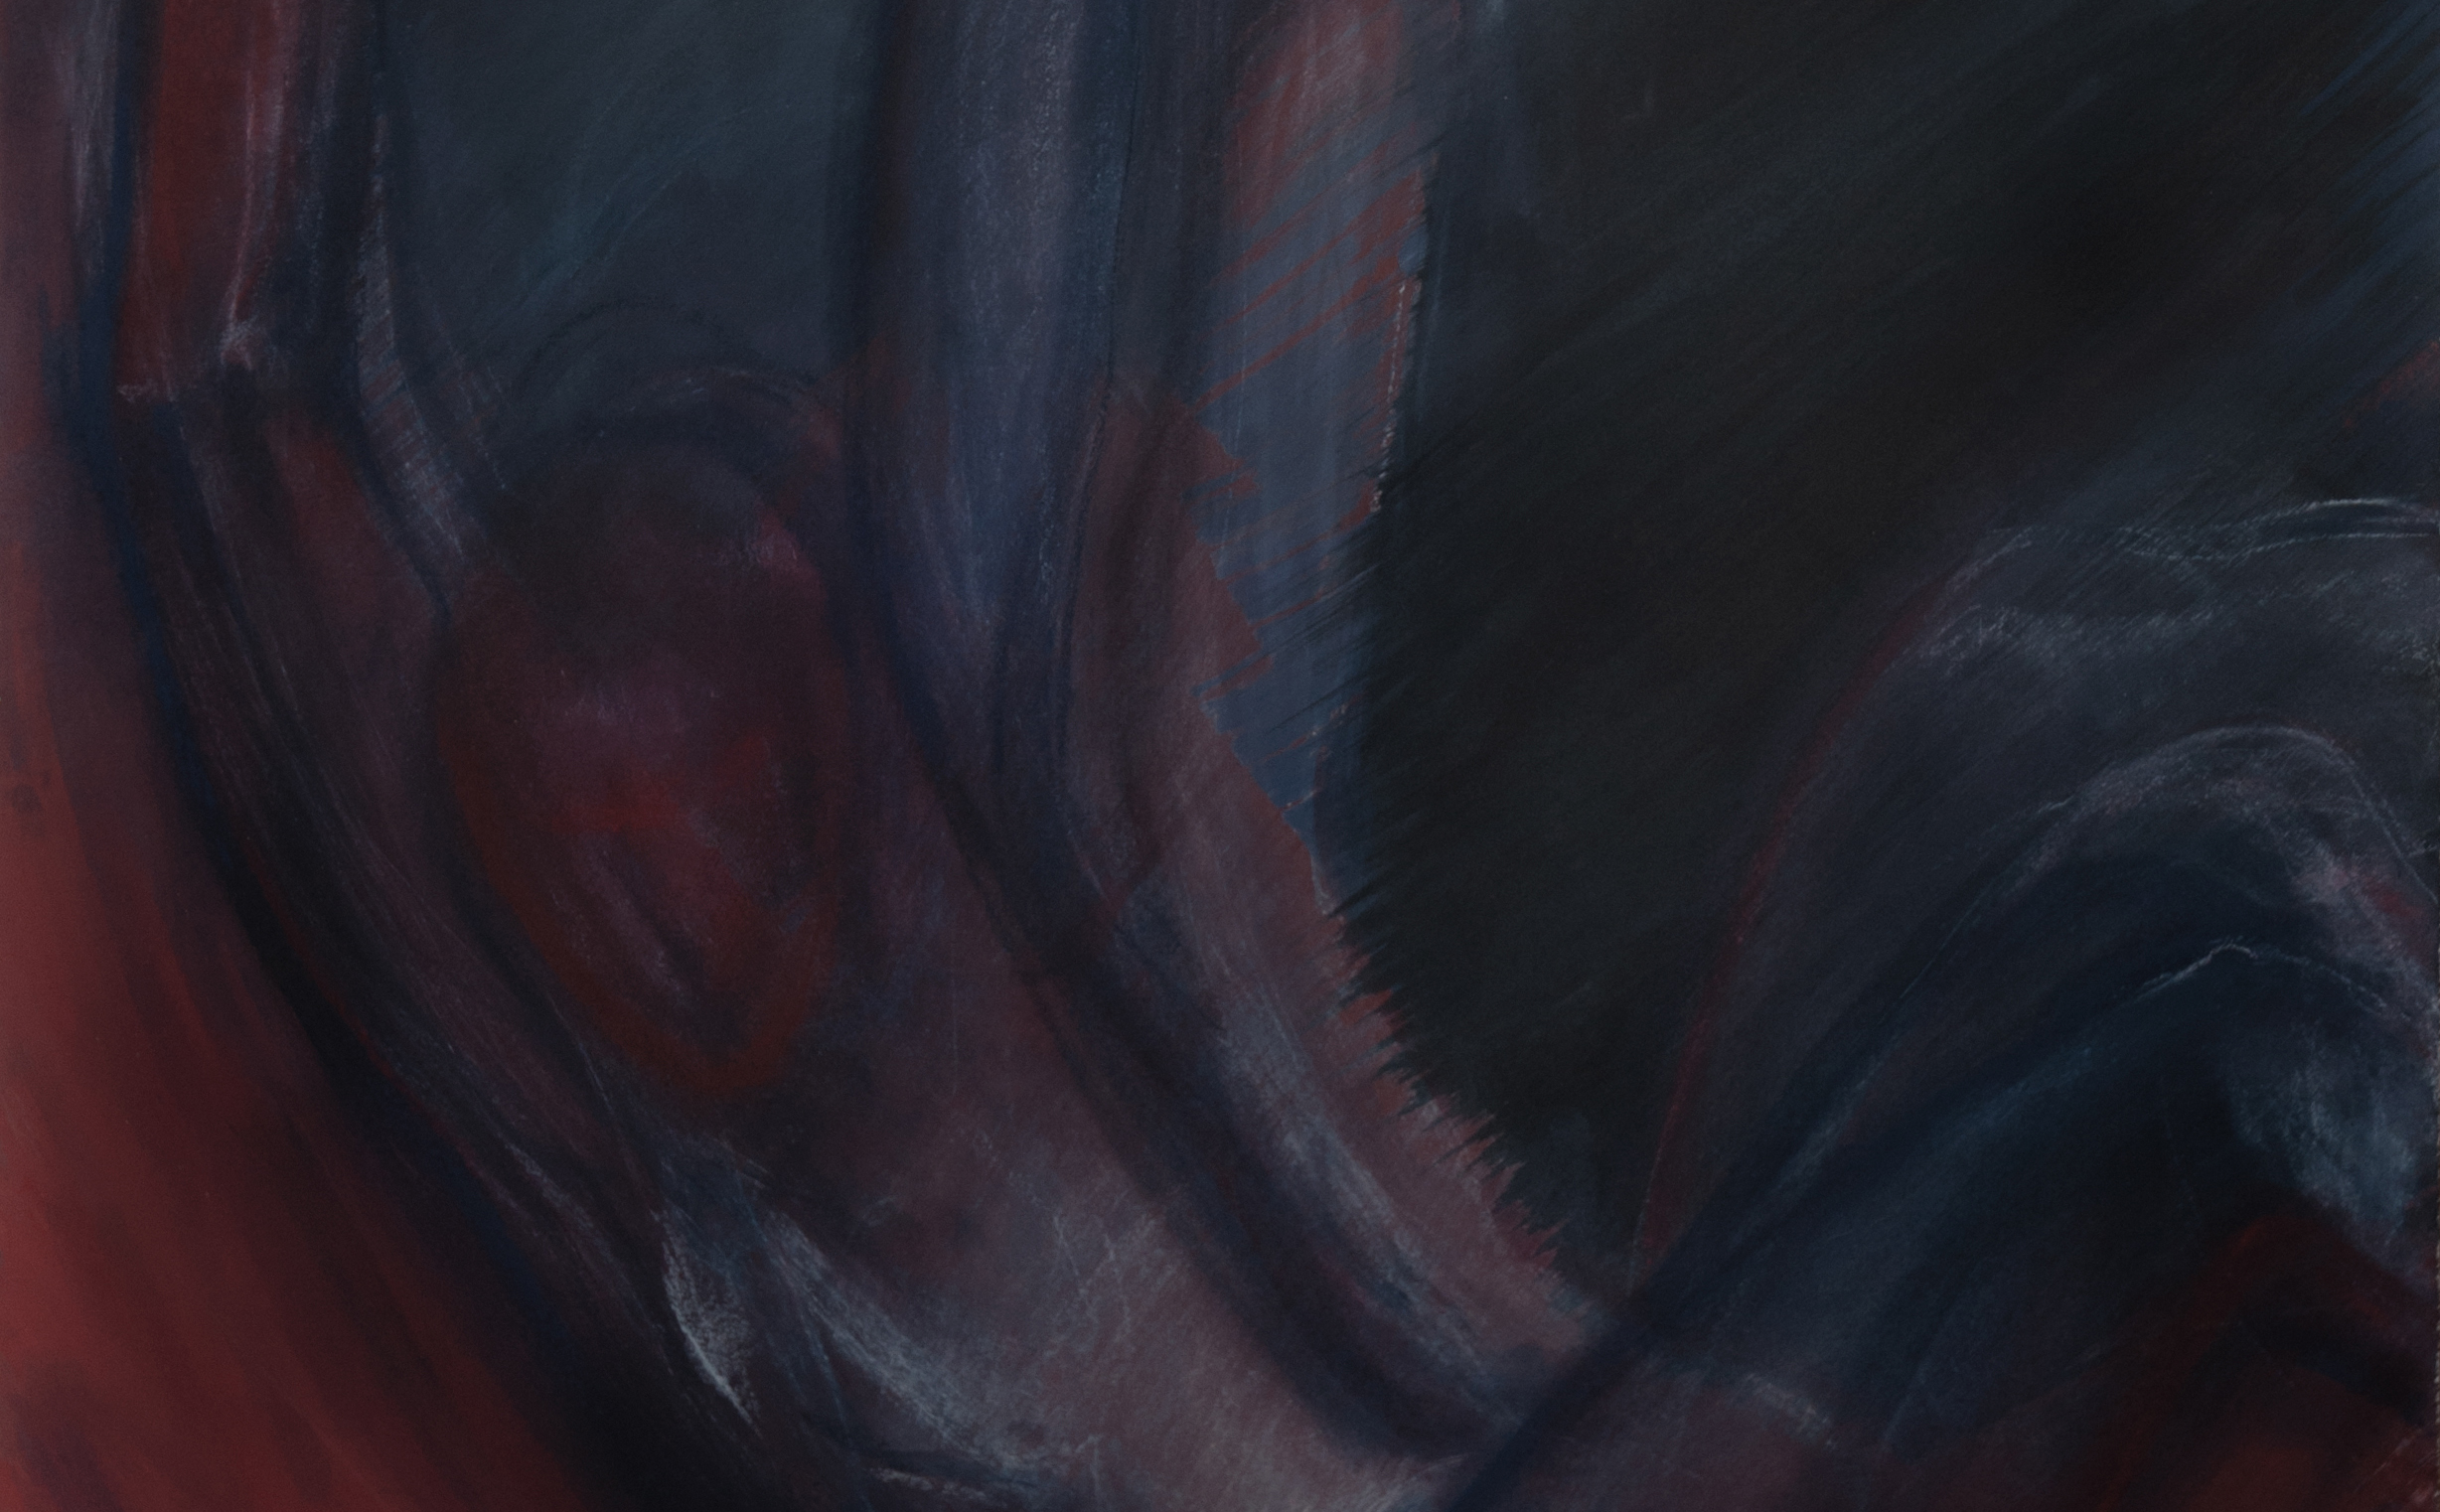 Красное колесо III. Падение / Бумага, цветной акриловый грунт / Пастель / 100х70 см /2018   Картину можно приобрести  в   Art-office Gallery FEDINI    http://galleryfedini.art/?p=606